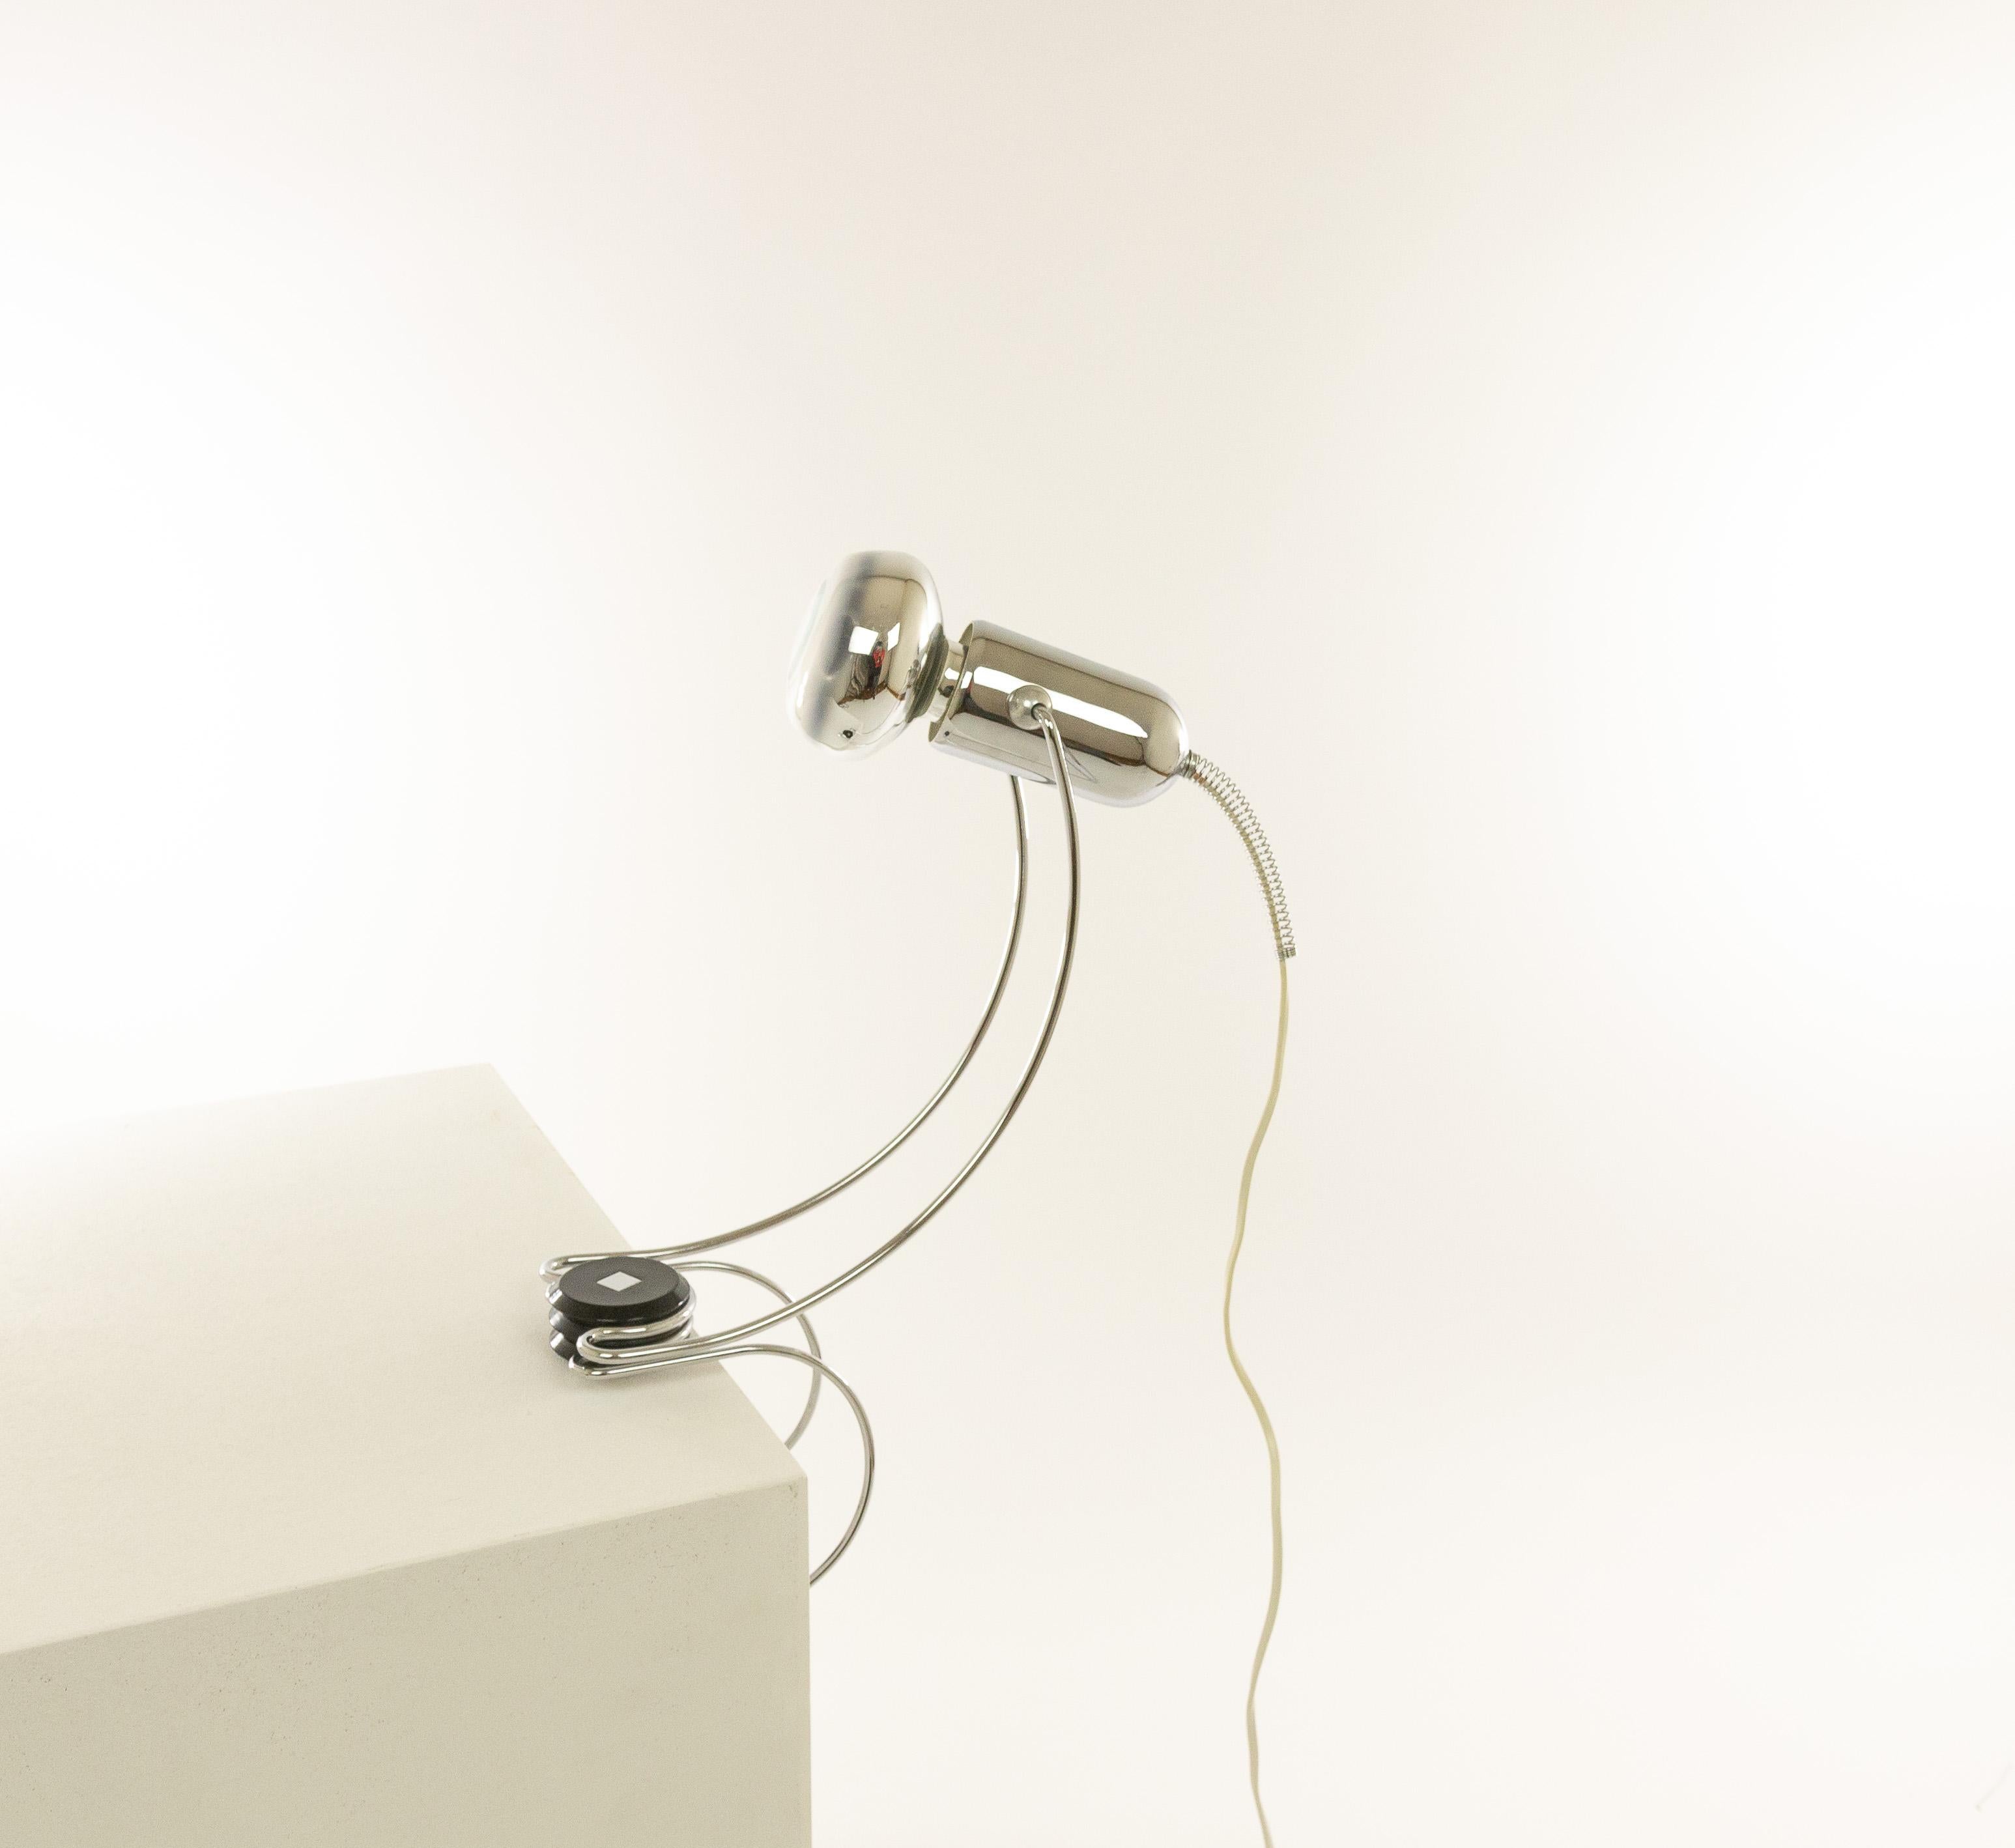 Lámpara de mesa cromada regulable diseñada por Francesco Fois y fabricada por Reggiani durante la década de 1960.

La lámpara, de elegantes formas redondeadas, puede sujetarse con su parte inferior, por ejemplo, a un tablero de mesa. La luz